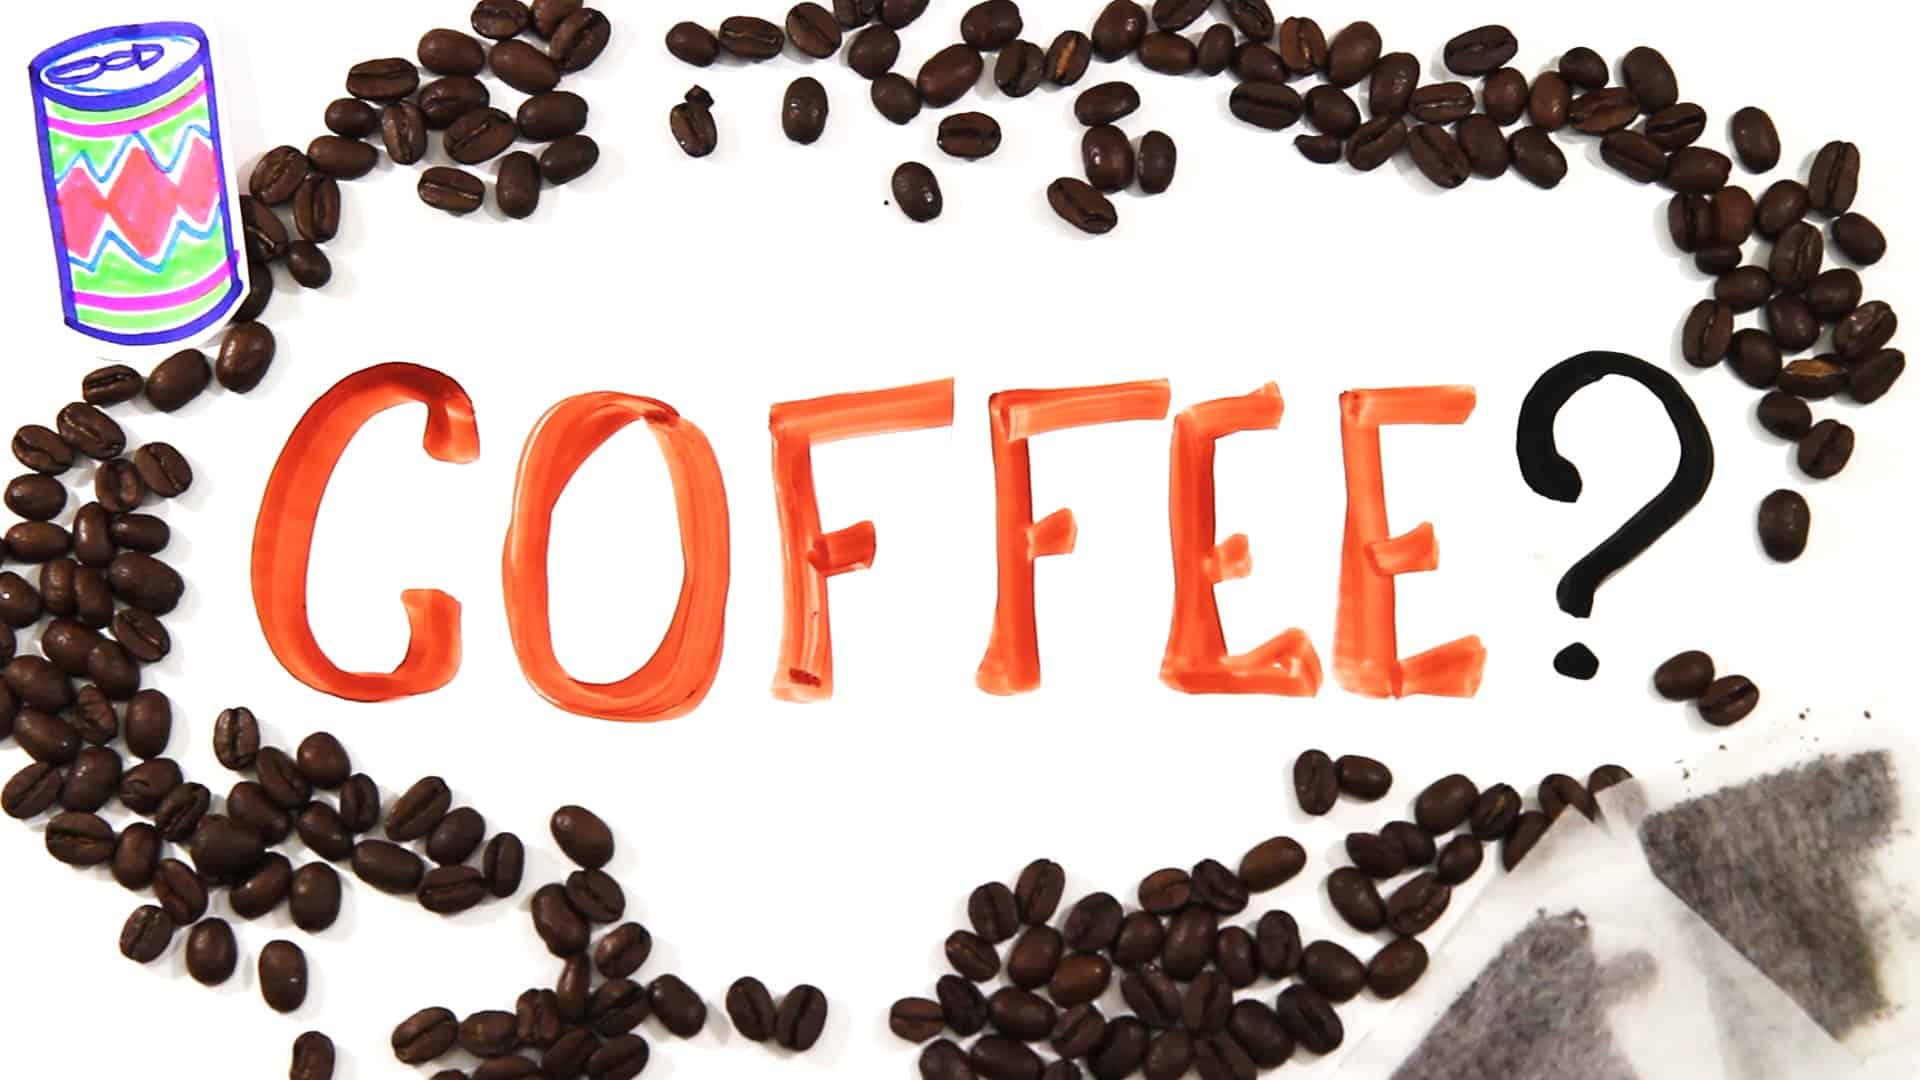 ¿Bebes tu café verdad?